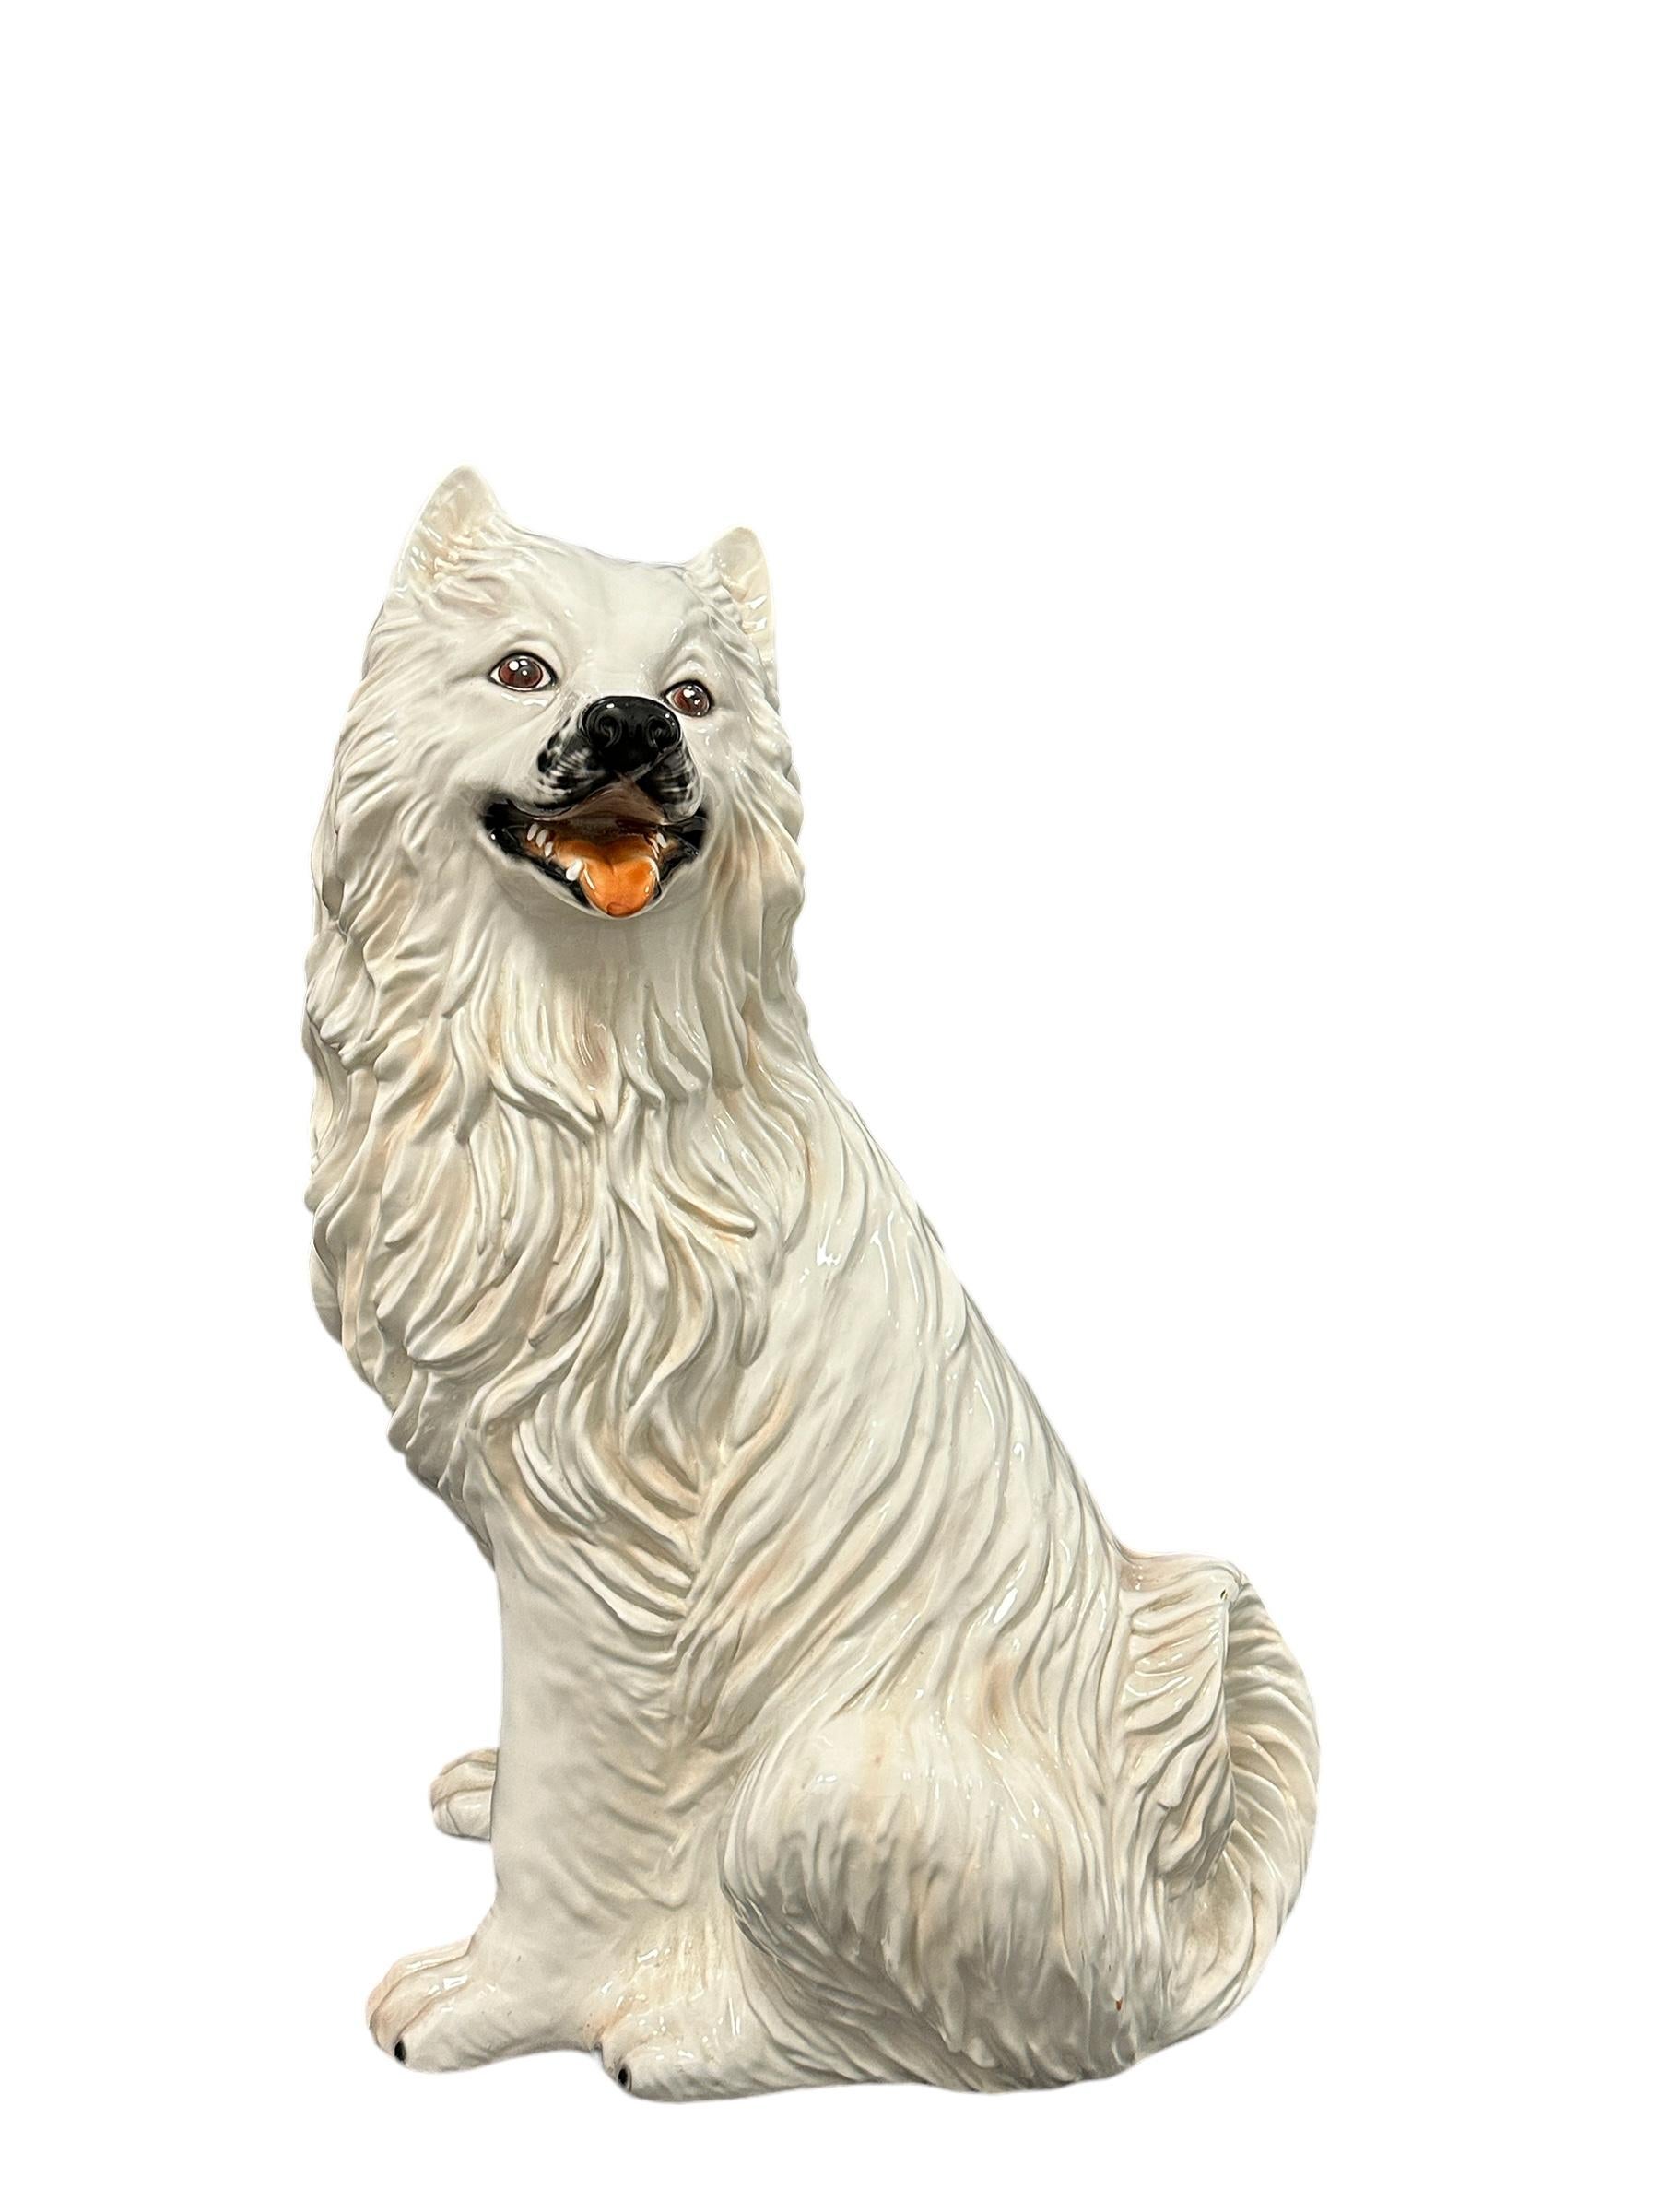 Figurine classique du début des années 1980 en céramique italienne Majolique, statue de chien blanc. Jolie addition à votre chambre ou hall d'entrée. En céramique majolique, peinte à la main. Avec un petit éclat au niveau de la fourrure comme on